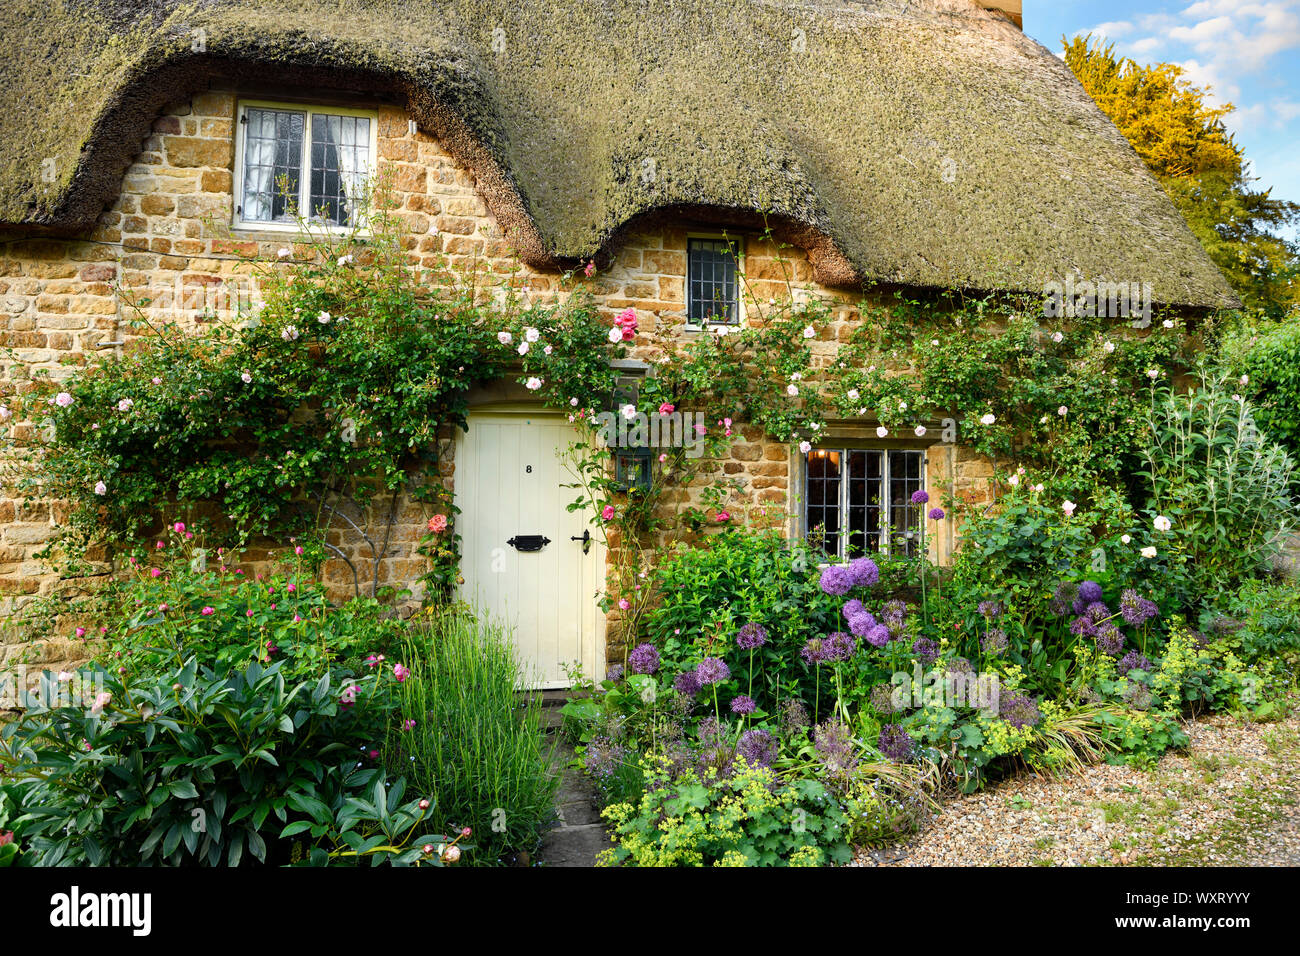 Toit de chaume historique chalet à Chadlington village avec des fleurs de jardin et de l'escalade sur cotswold stone rose jaune Oxfordshire England Banque D'Images